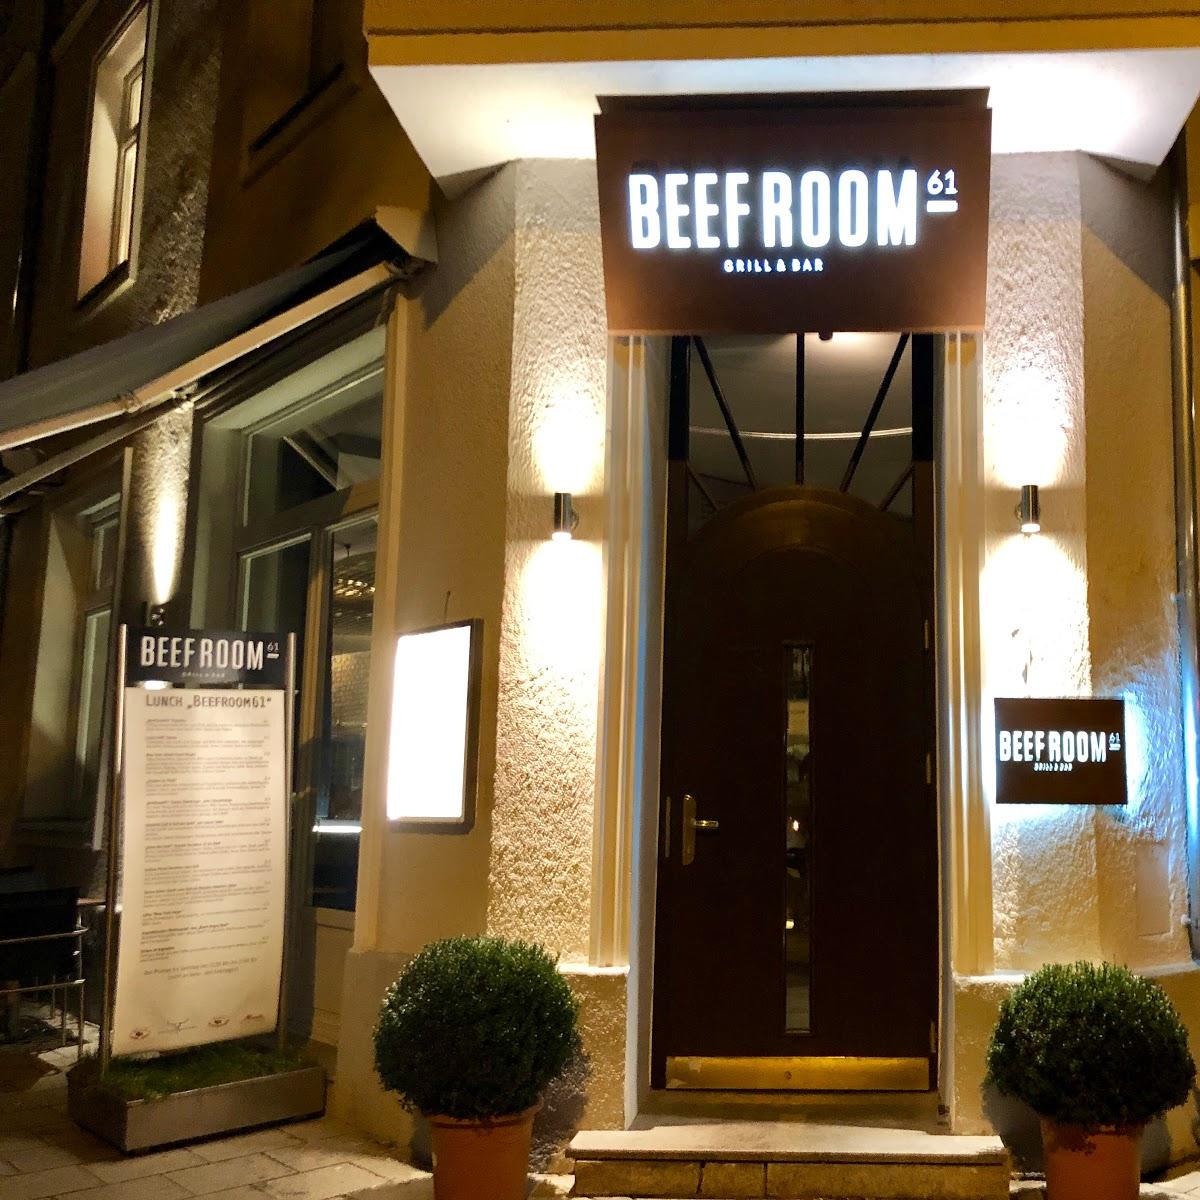 Restaurant "BEEFROOM61" in München